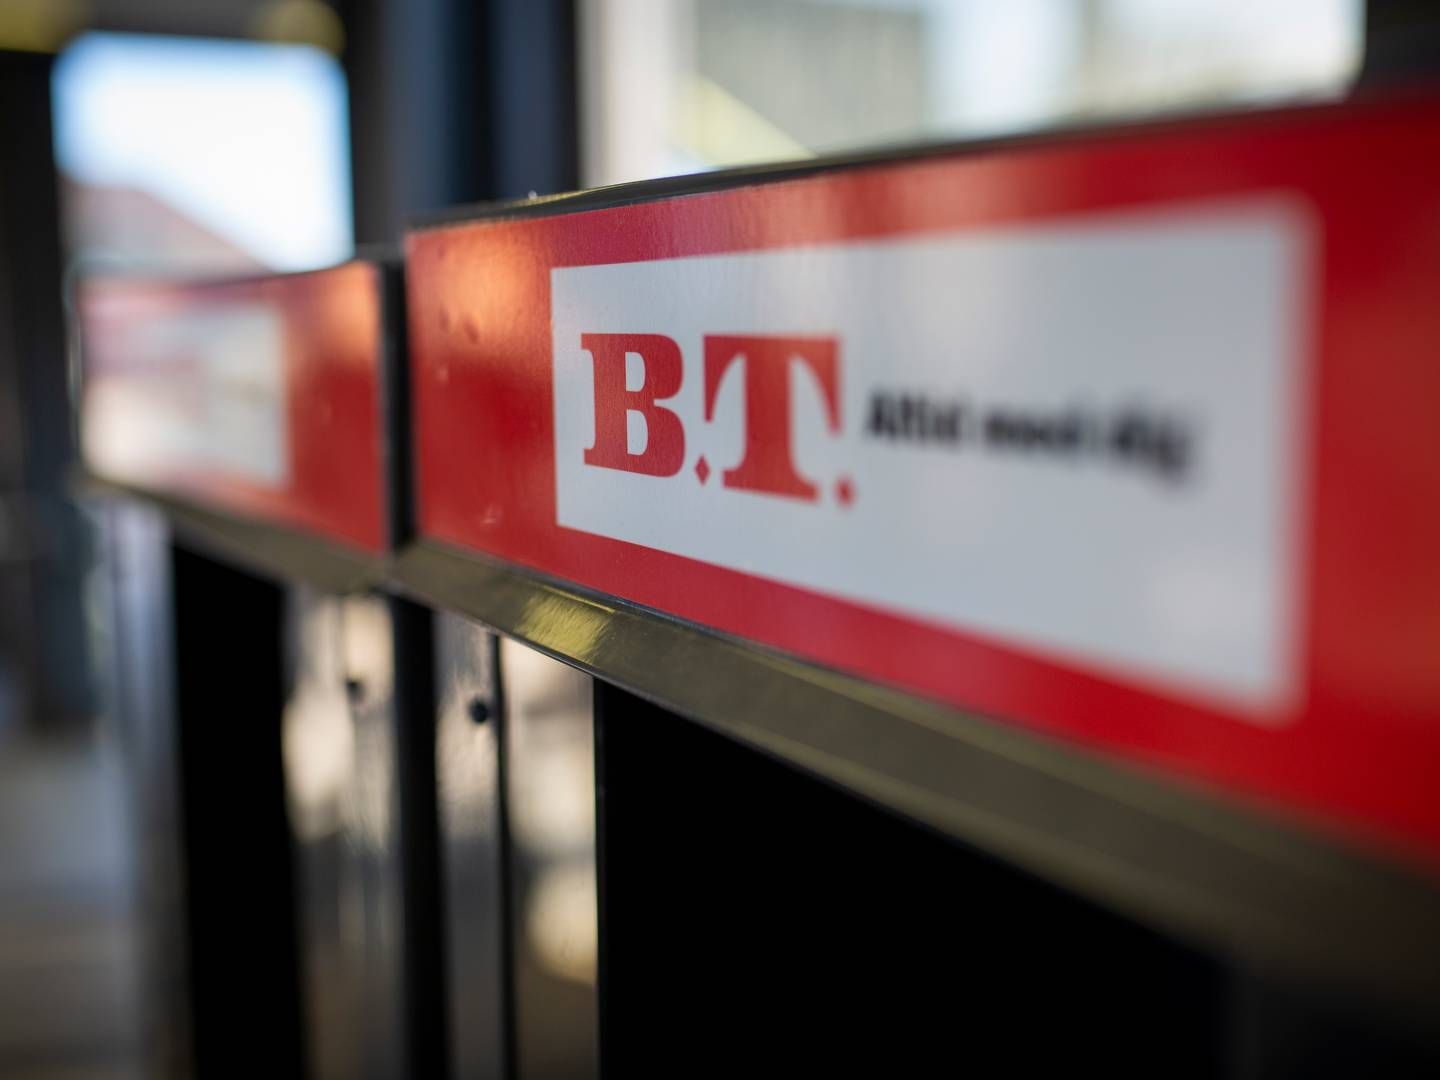 Medarbejderne på B.T. er frustrerede over, at der er sket flere strategi- og chefredaktørskift på relativt kort tid, og at de ikke er blevet inddraget tilstrækkeligt i ændringer. | Foto: Jens Hartmann